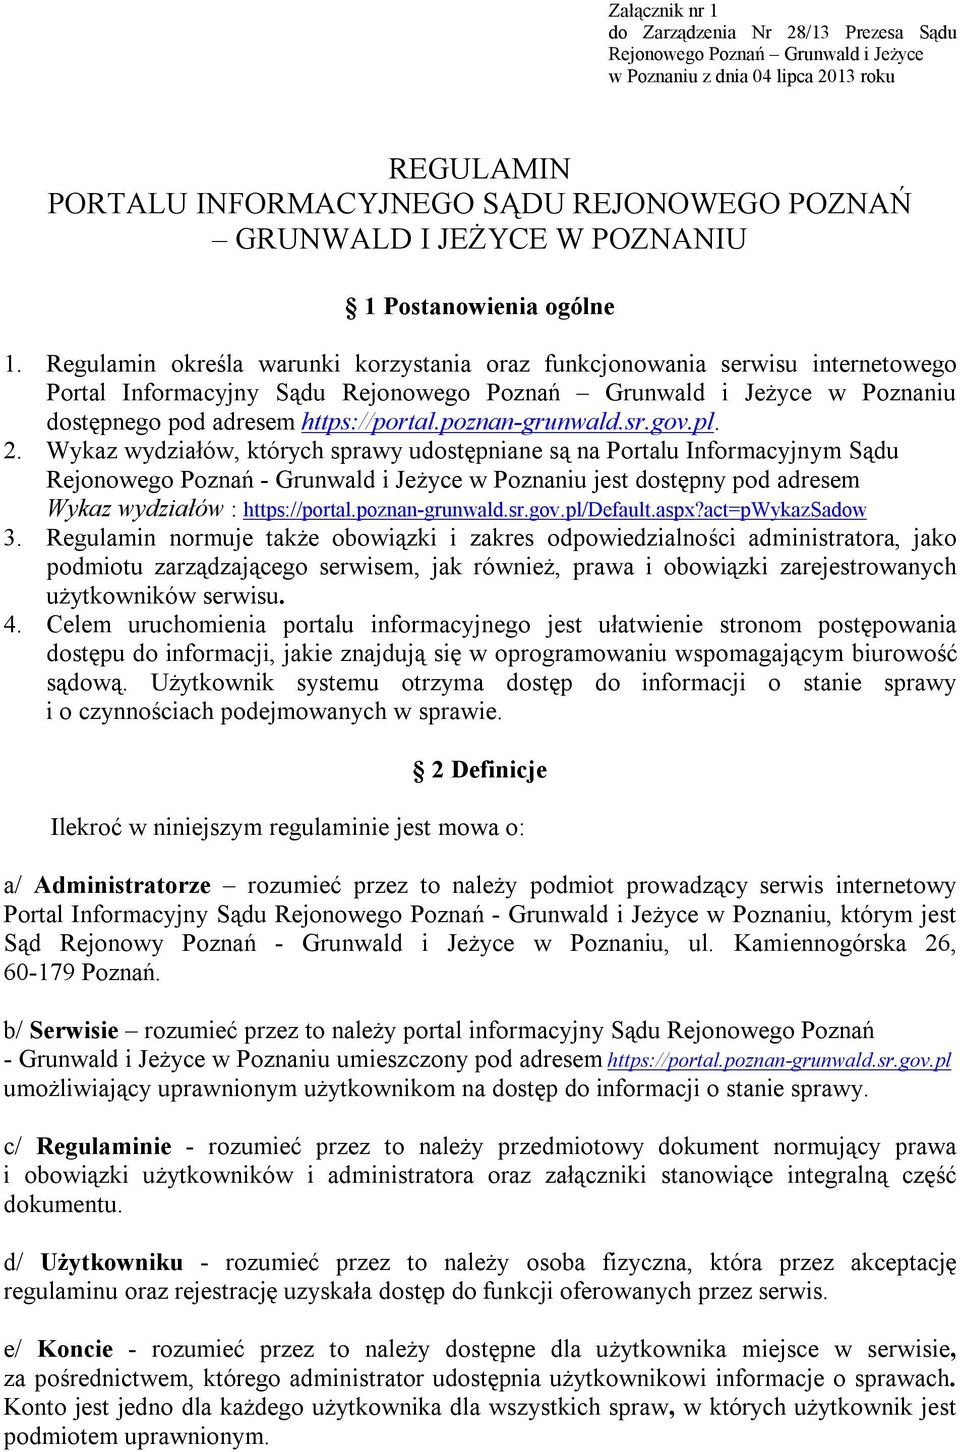 Regulamin określa warunki korzystania oraz funkcjonowania serwisu internetowego Portal Informacyjny Sądu Rejonowego Poznań Grunwald i Jeżyce w Poznaniu dostępnego pod adresem https://portal.